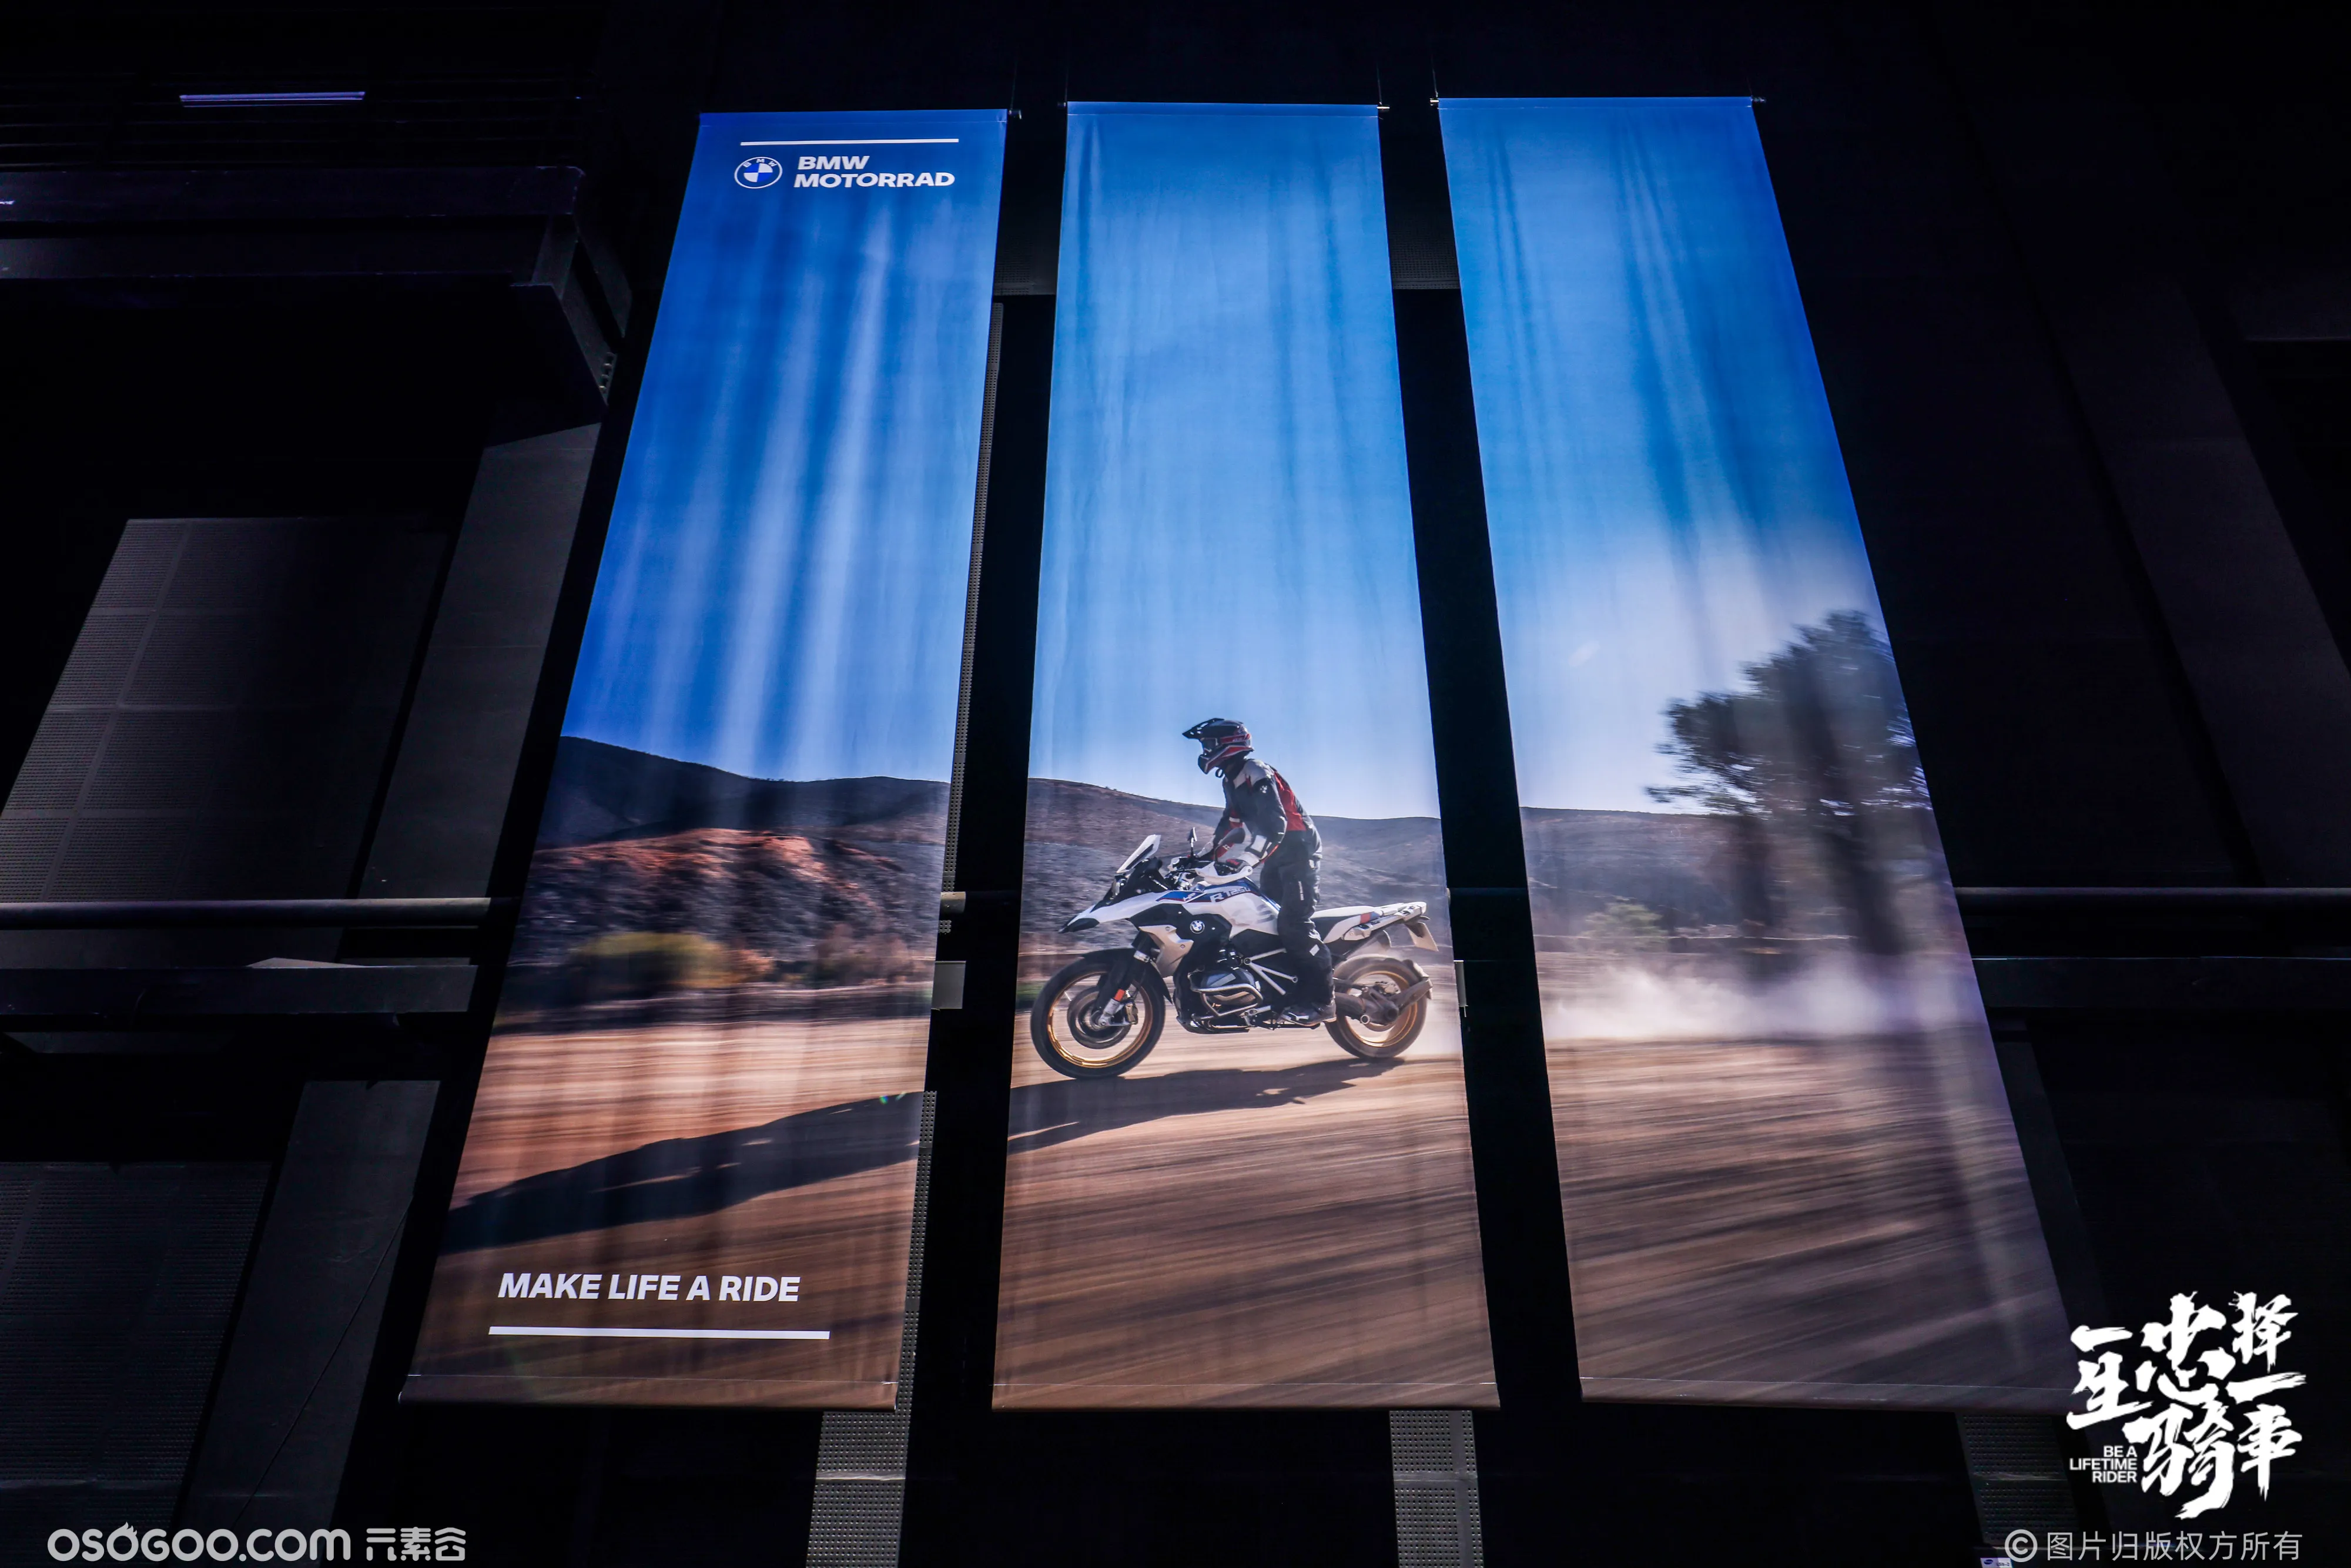 激情拉满 肆意热爱|2023 BMW 摩托车中国经销商达人赛